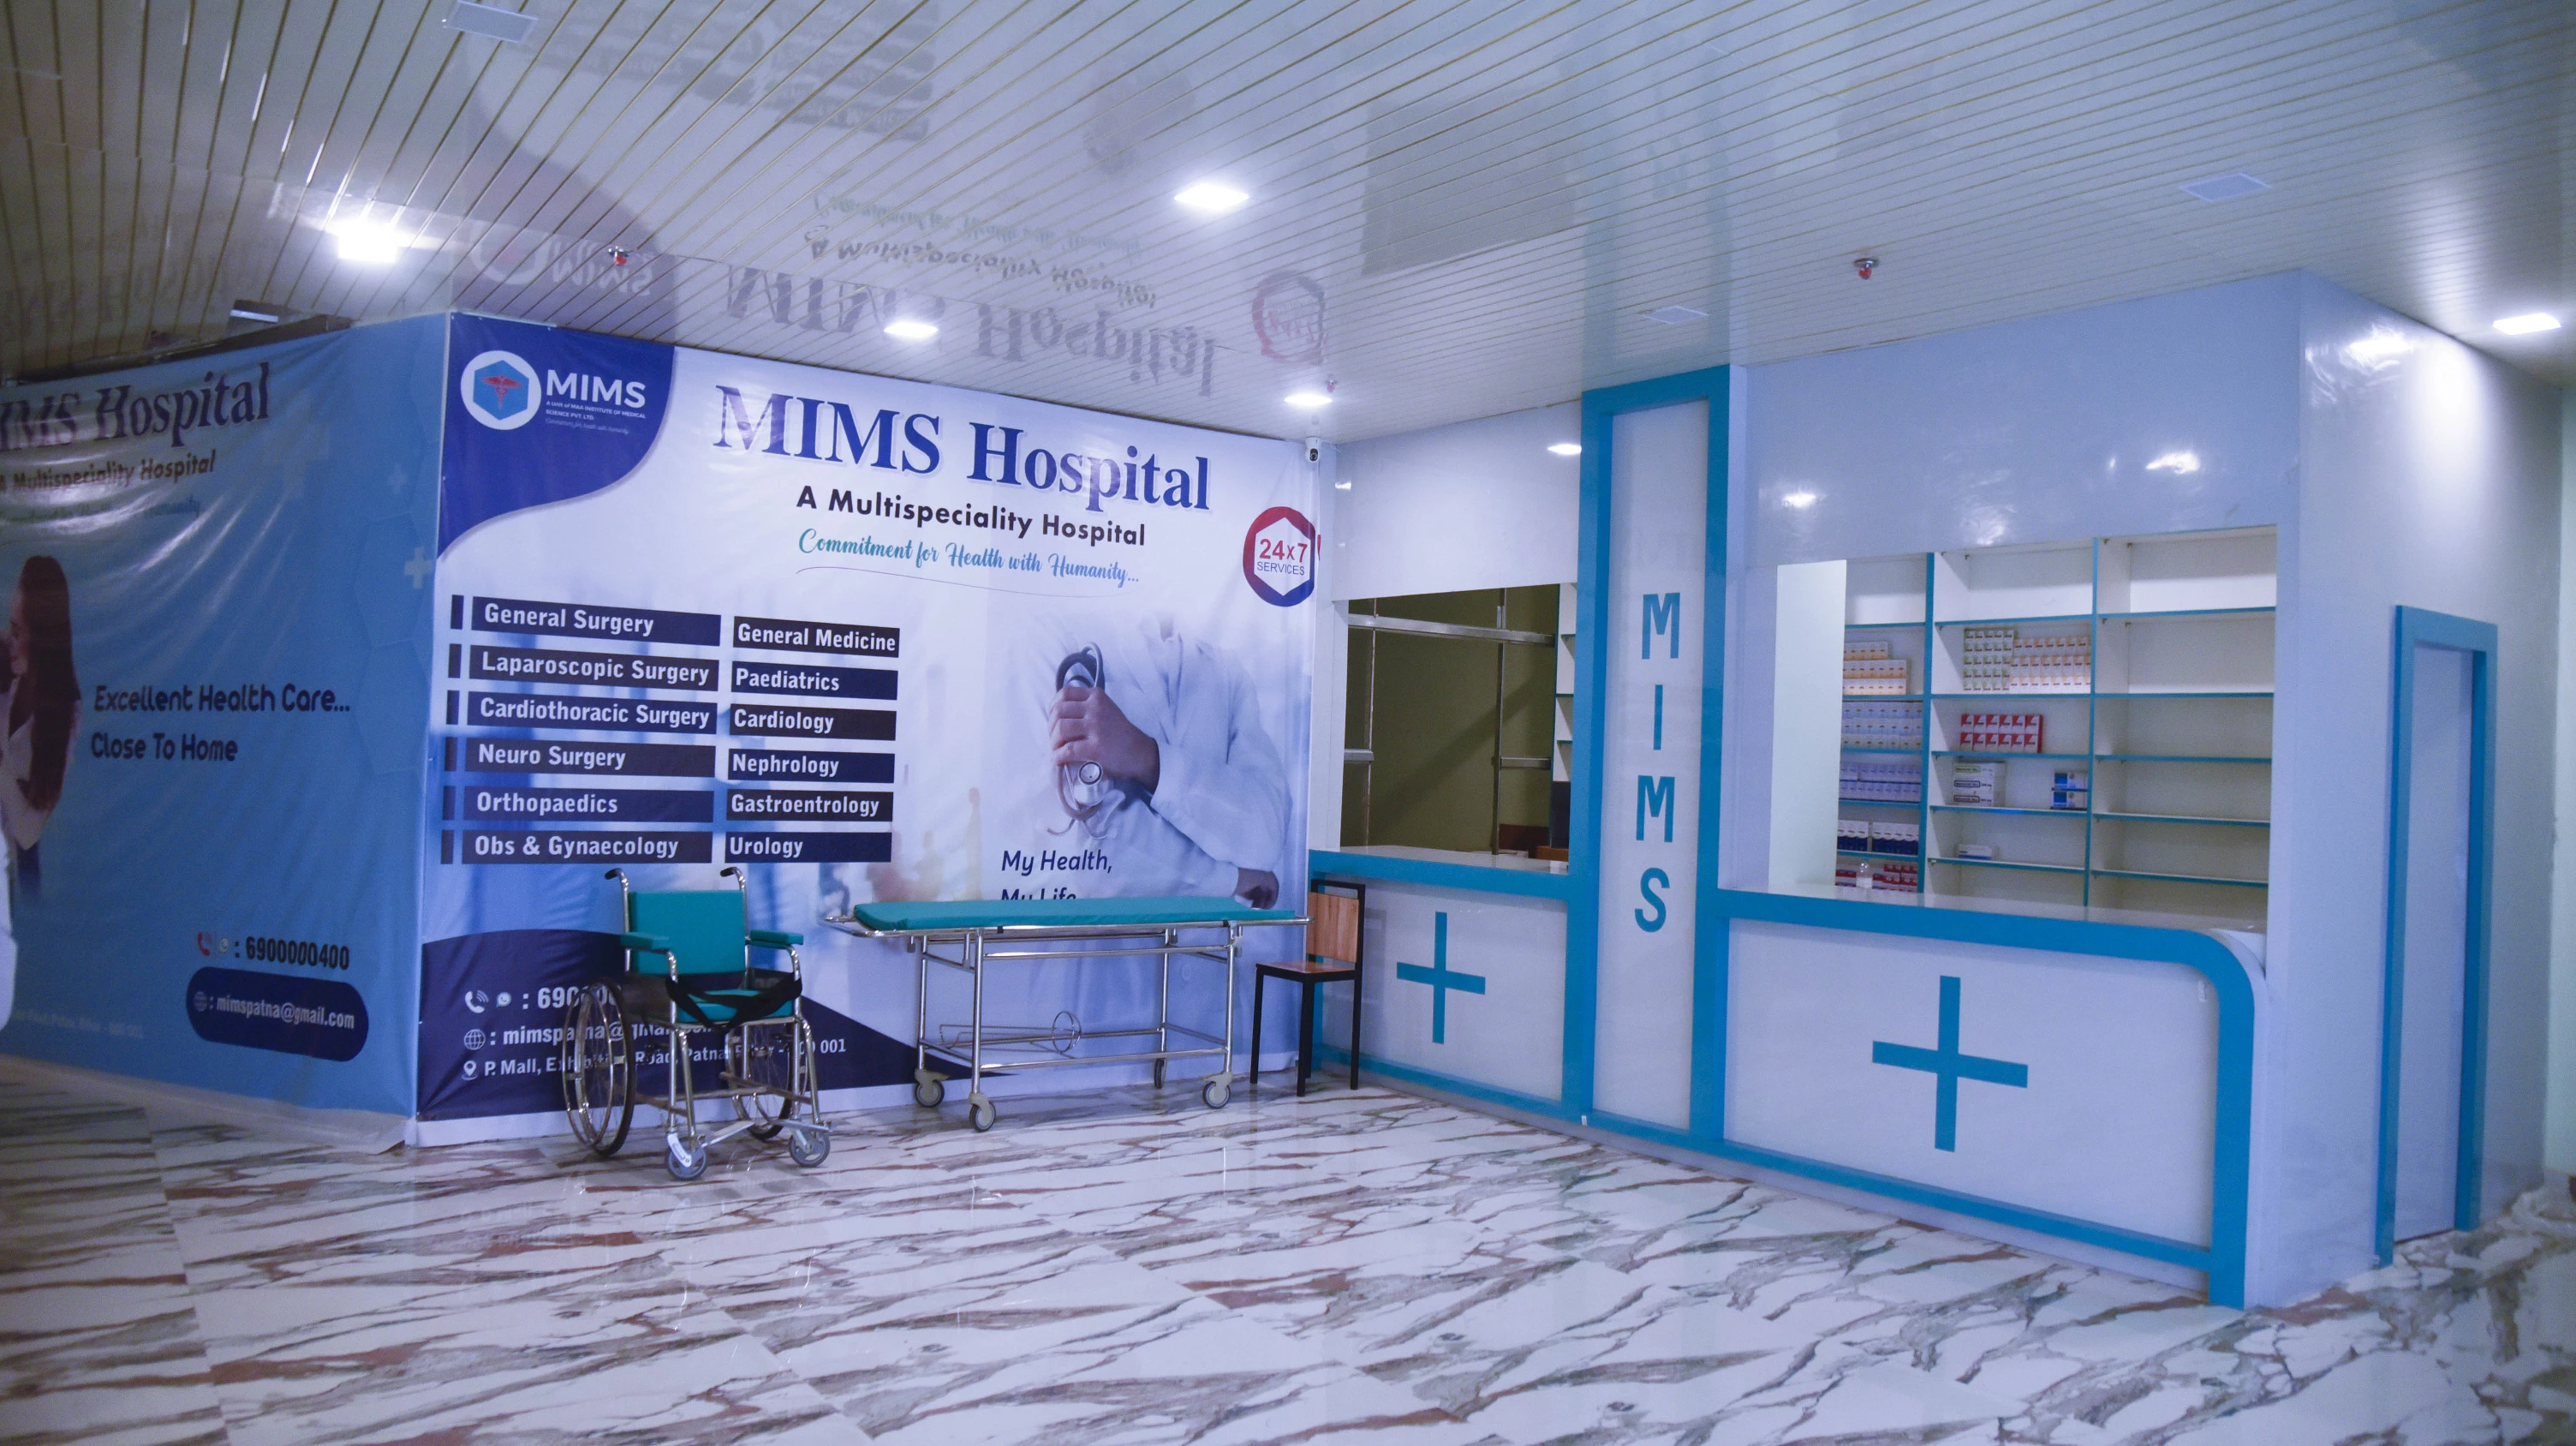 Pharmacy of MIMS Hospital